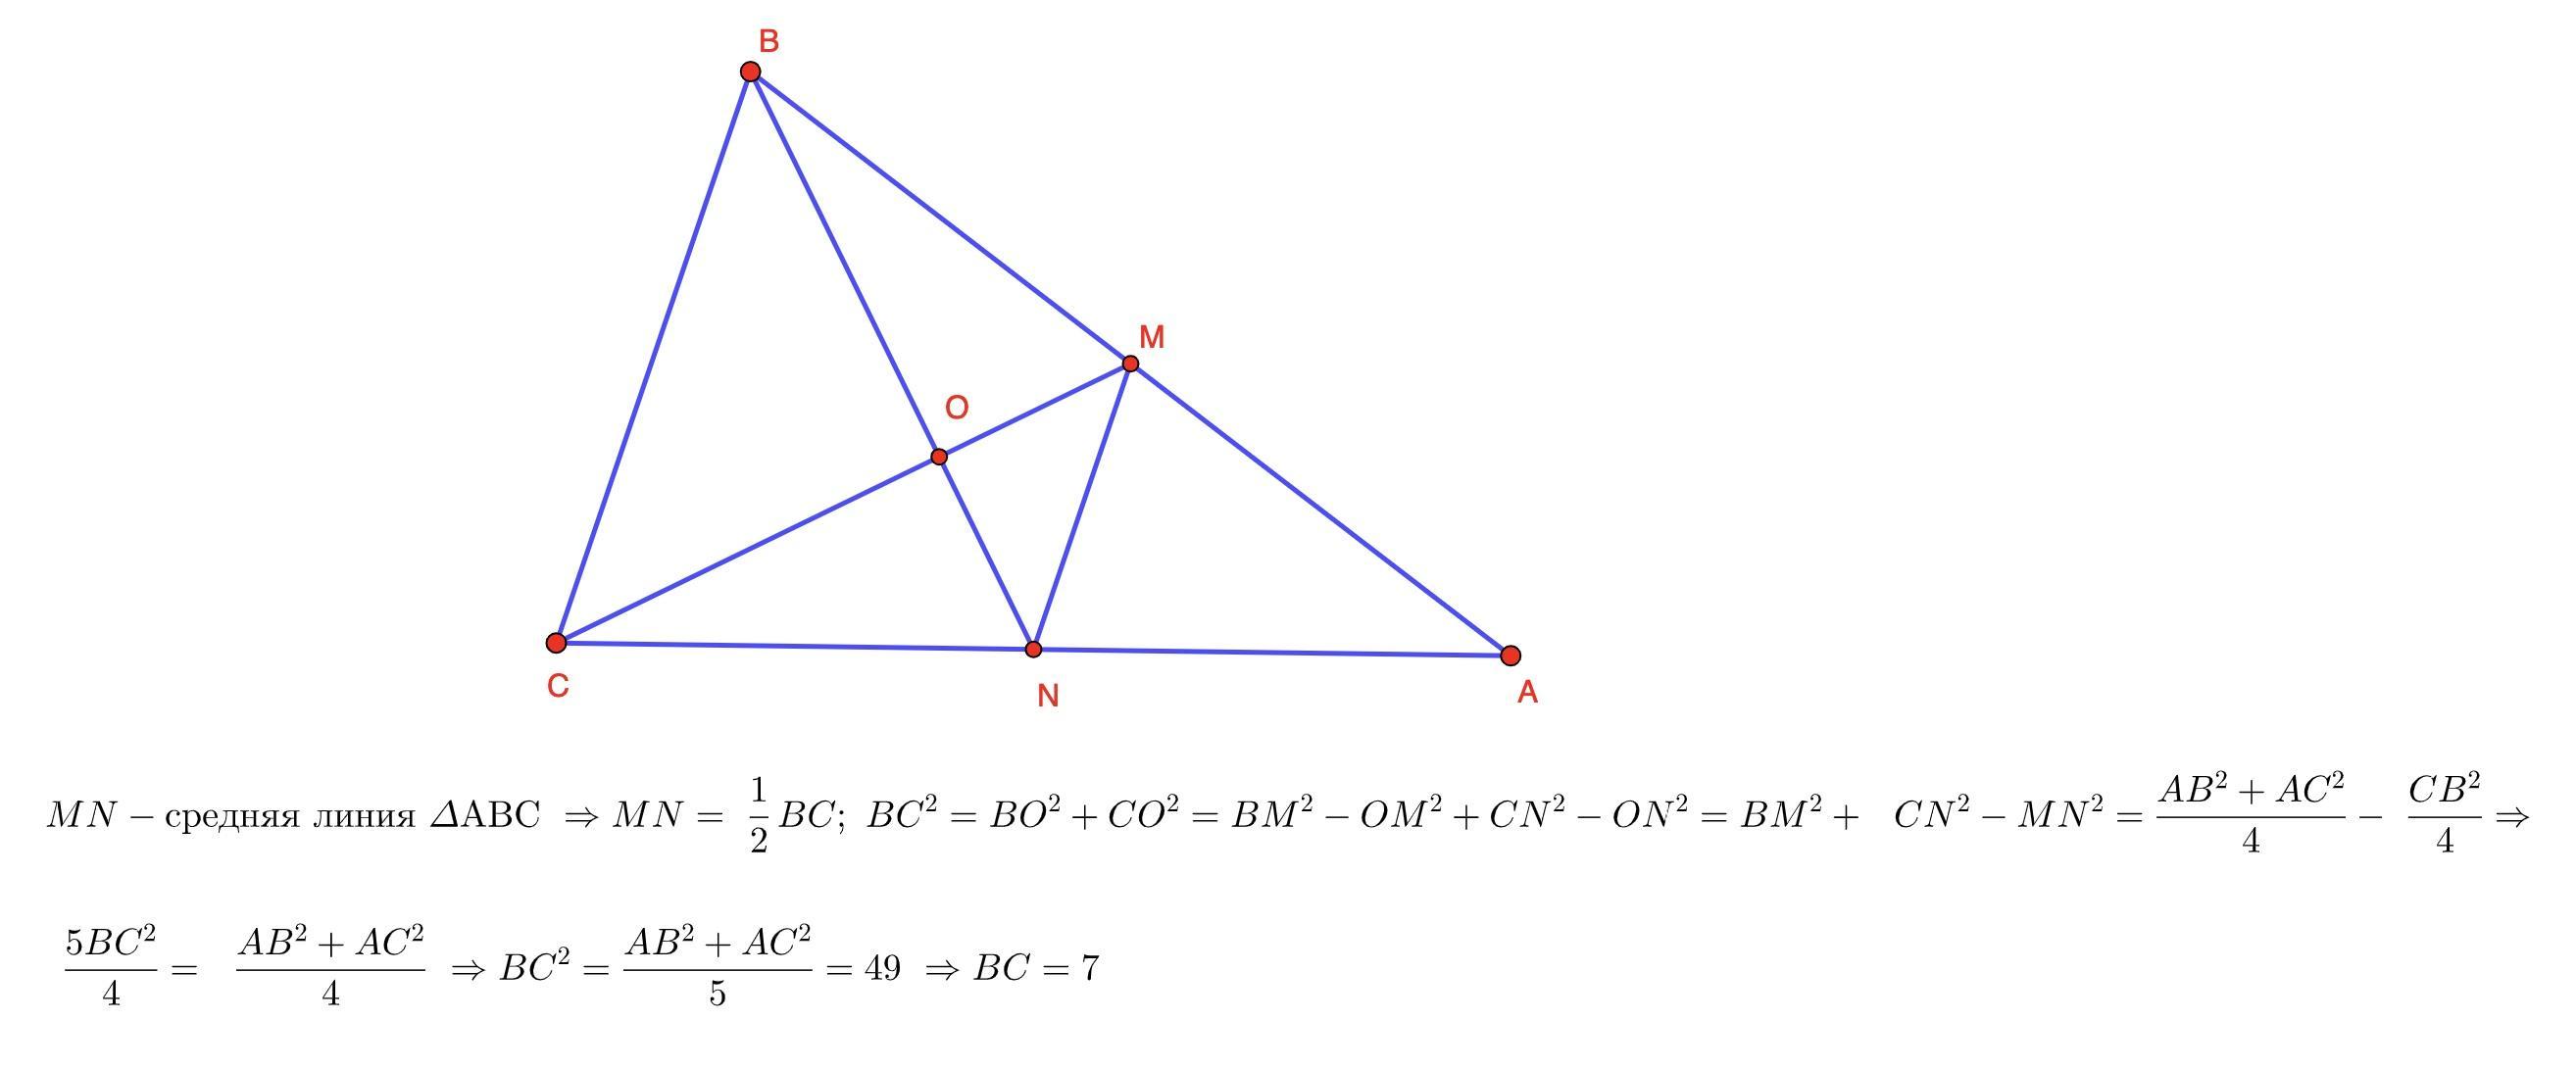 В равностороннем треугольнике авс провели медиану ам. На стороне BC треугольника ABC выбрана точка d. Рисунок треугольника АВС С медианой ВМ. В треугольнике ABC BM Медиана и BH высота. BM перпендикулярно BC BM перпендикулярно ab.